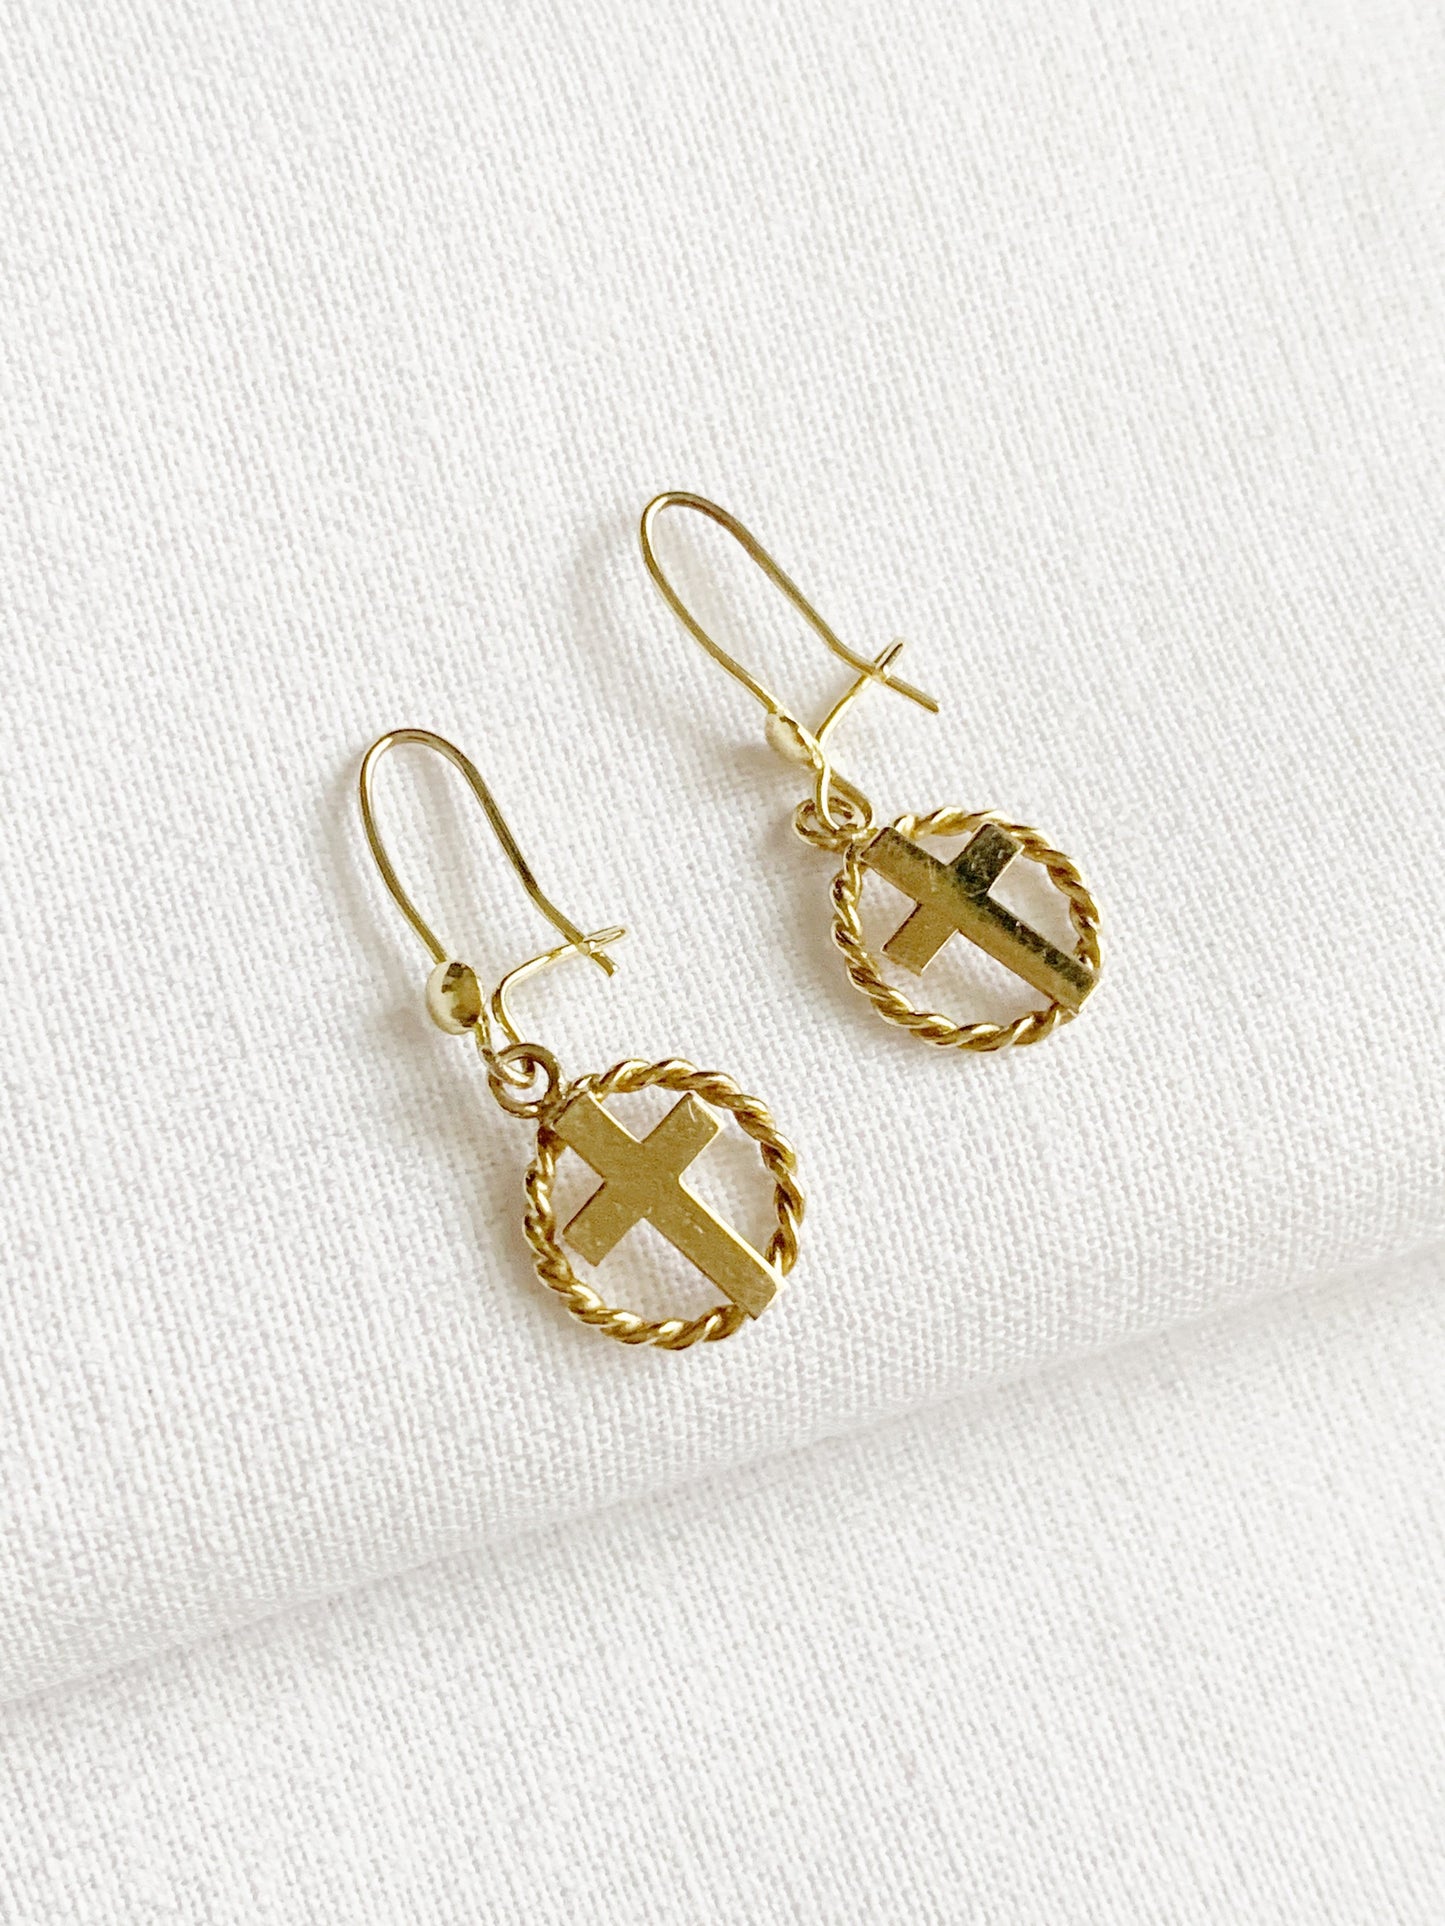 Vintage 9ct Gold Twist Cross Dangle Earrings